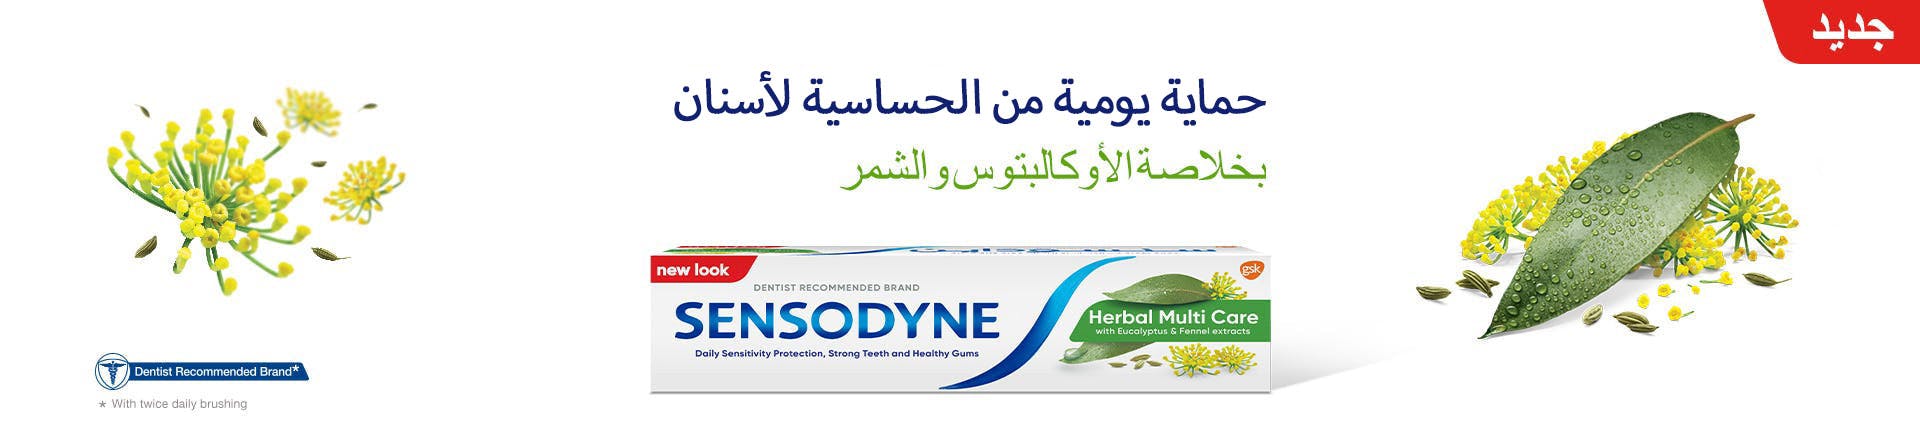 Sensodyne Banner